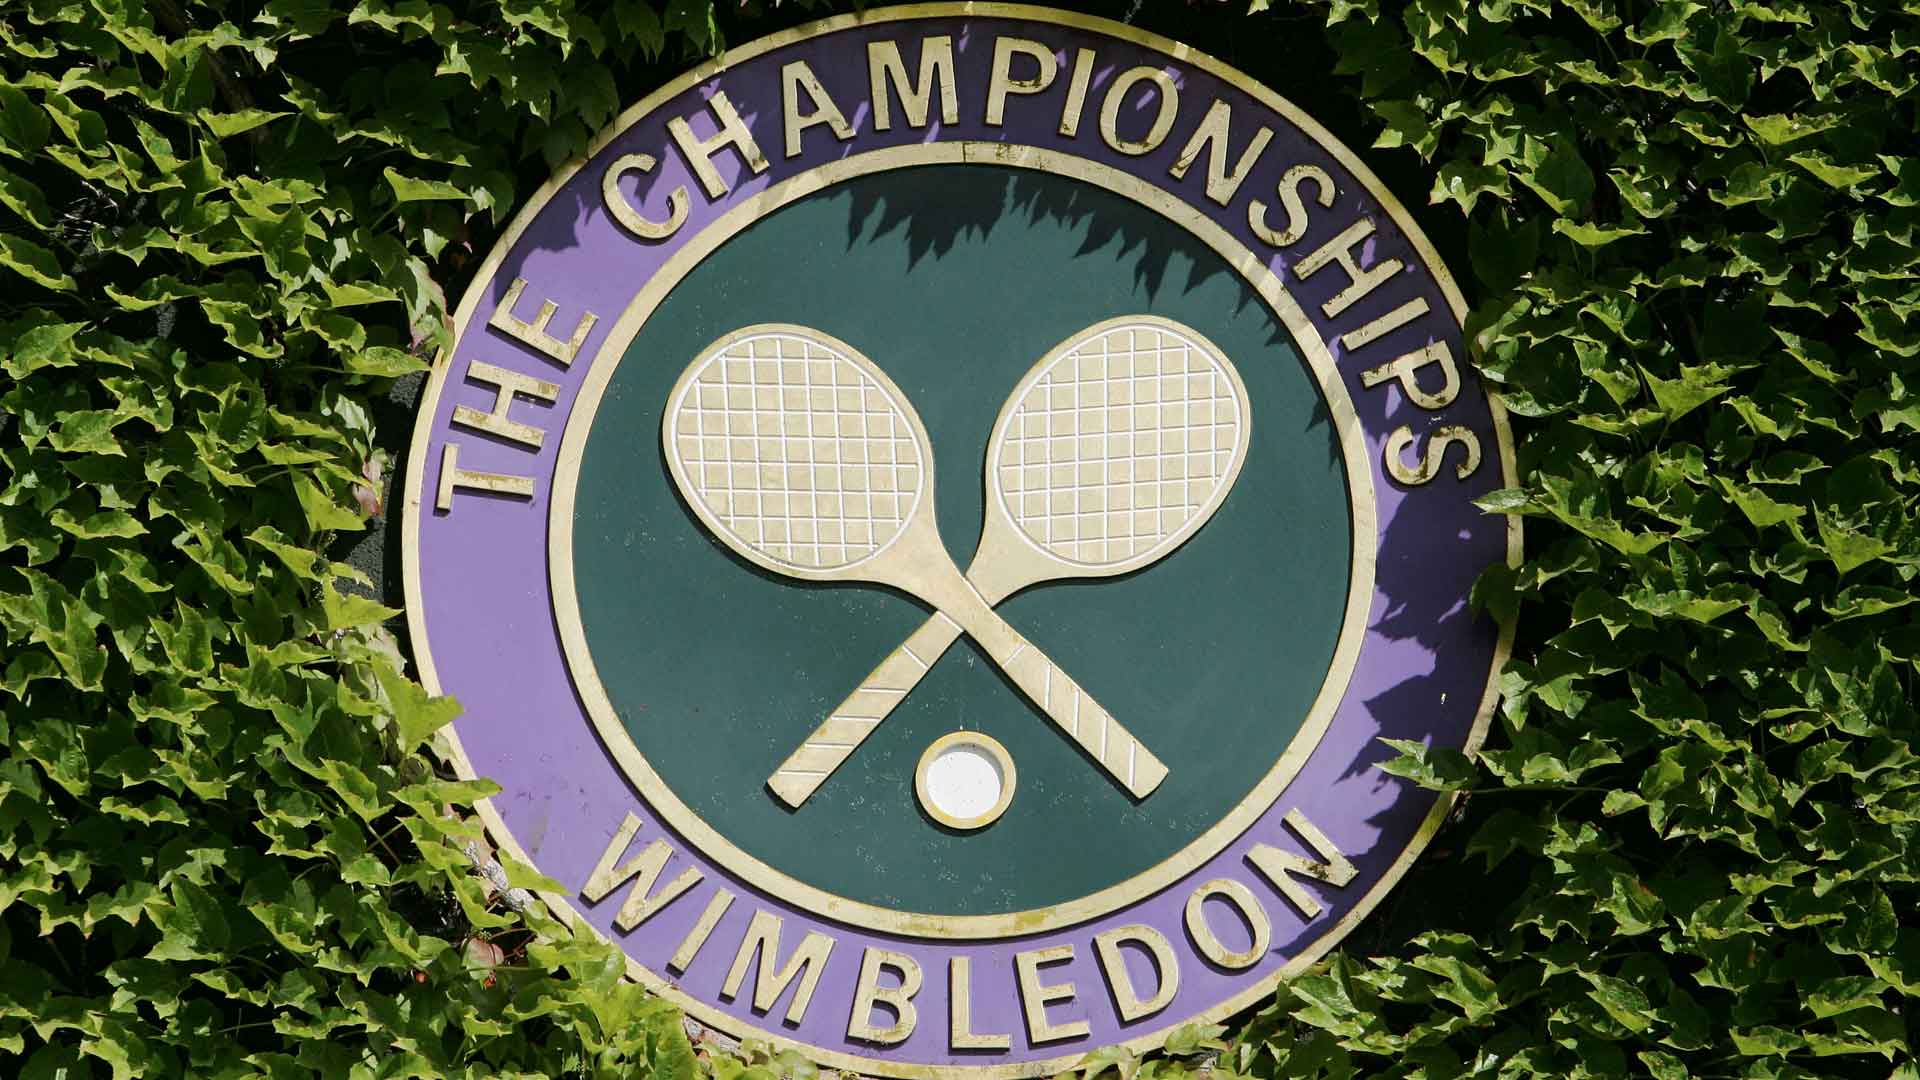 El dinero total en premios de Wimbledon se ha duplicado en relación a 2014.